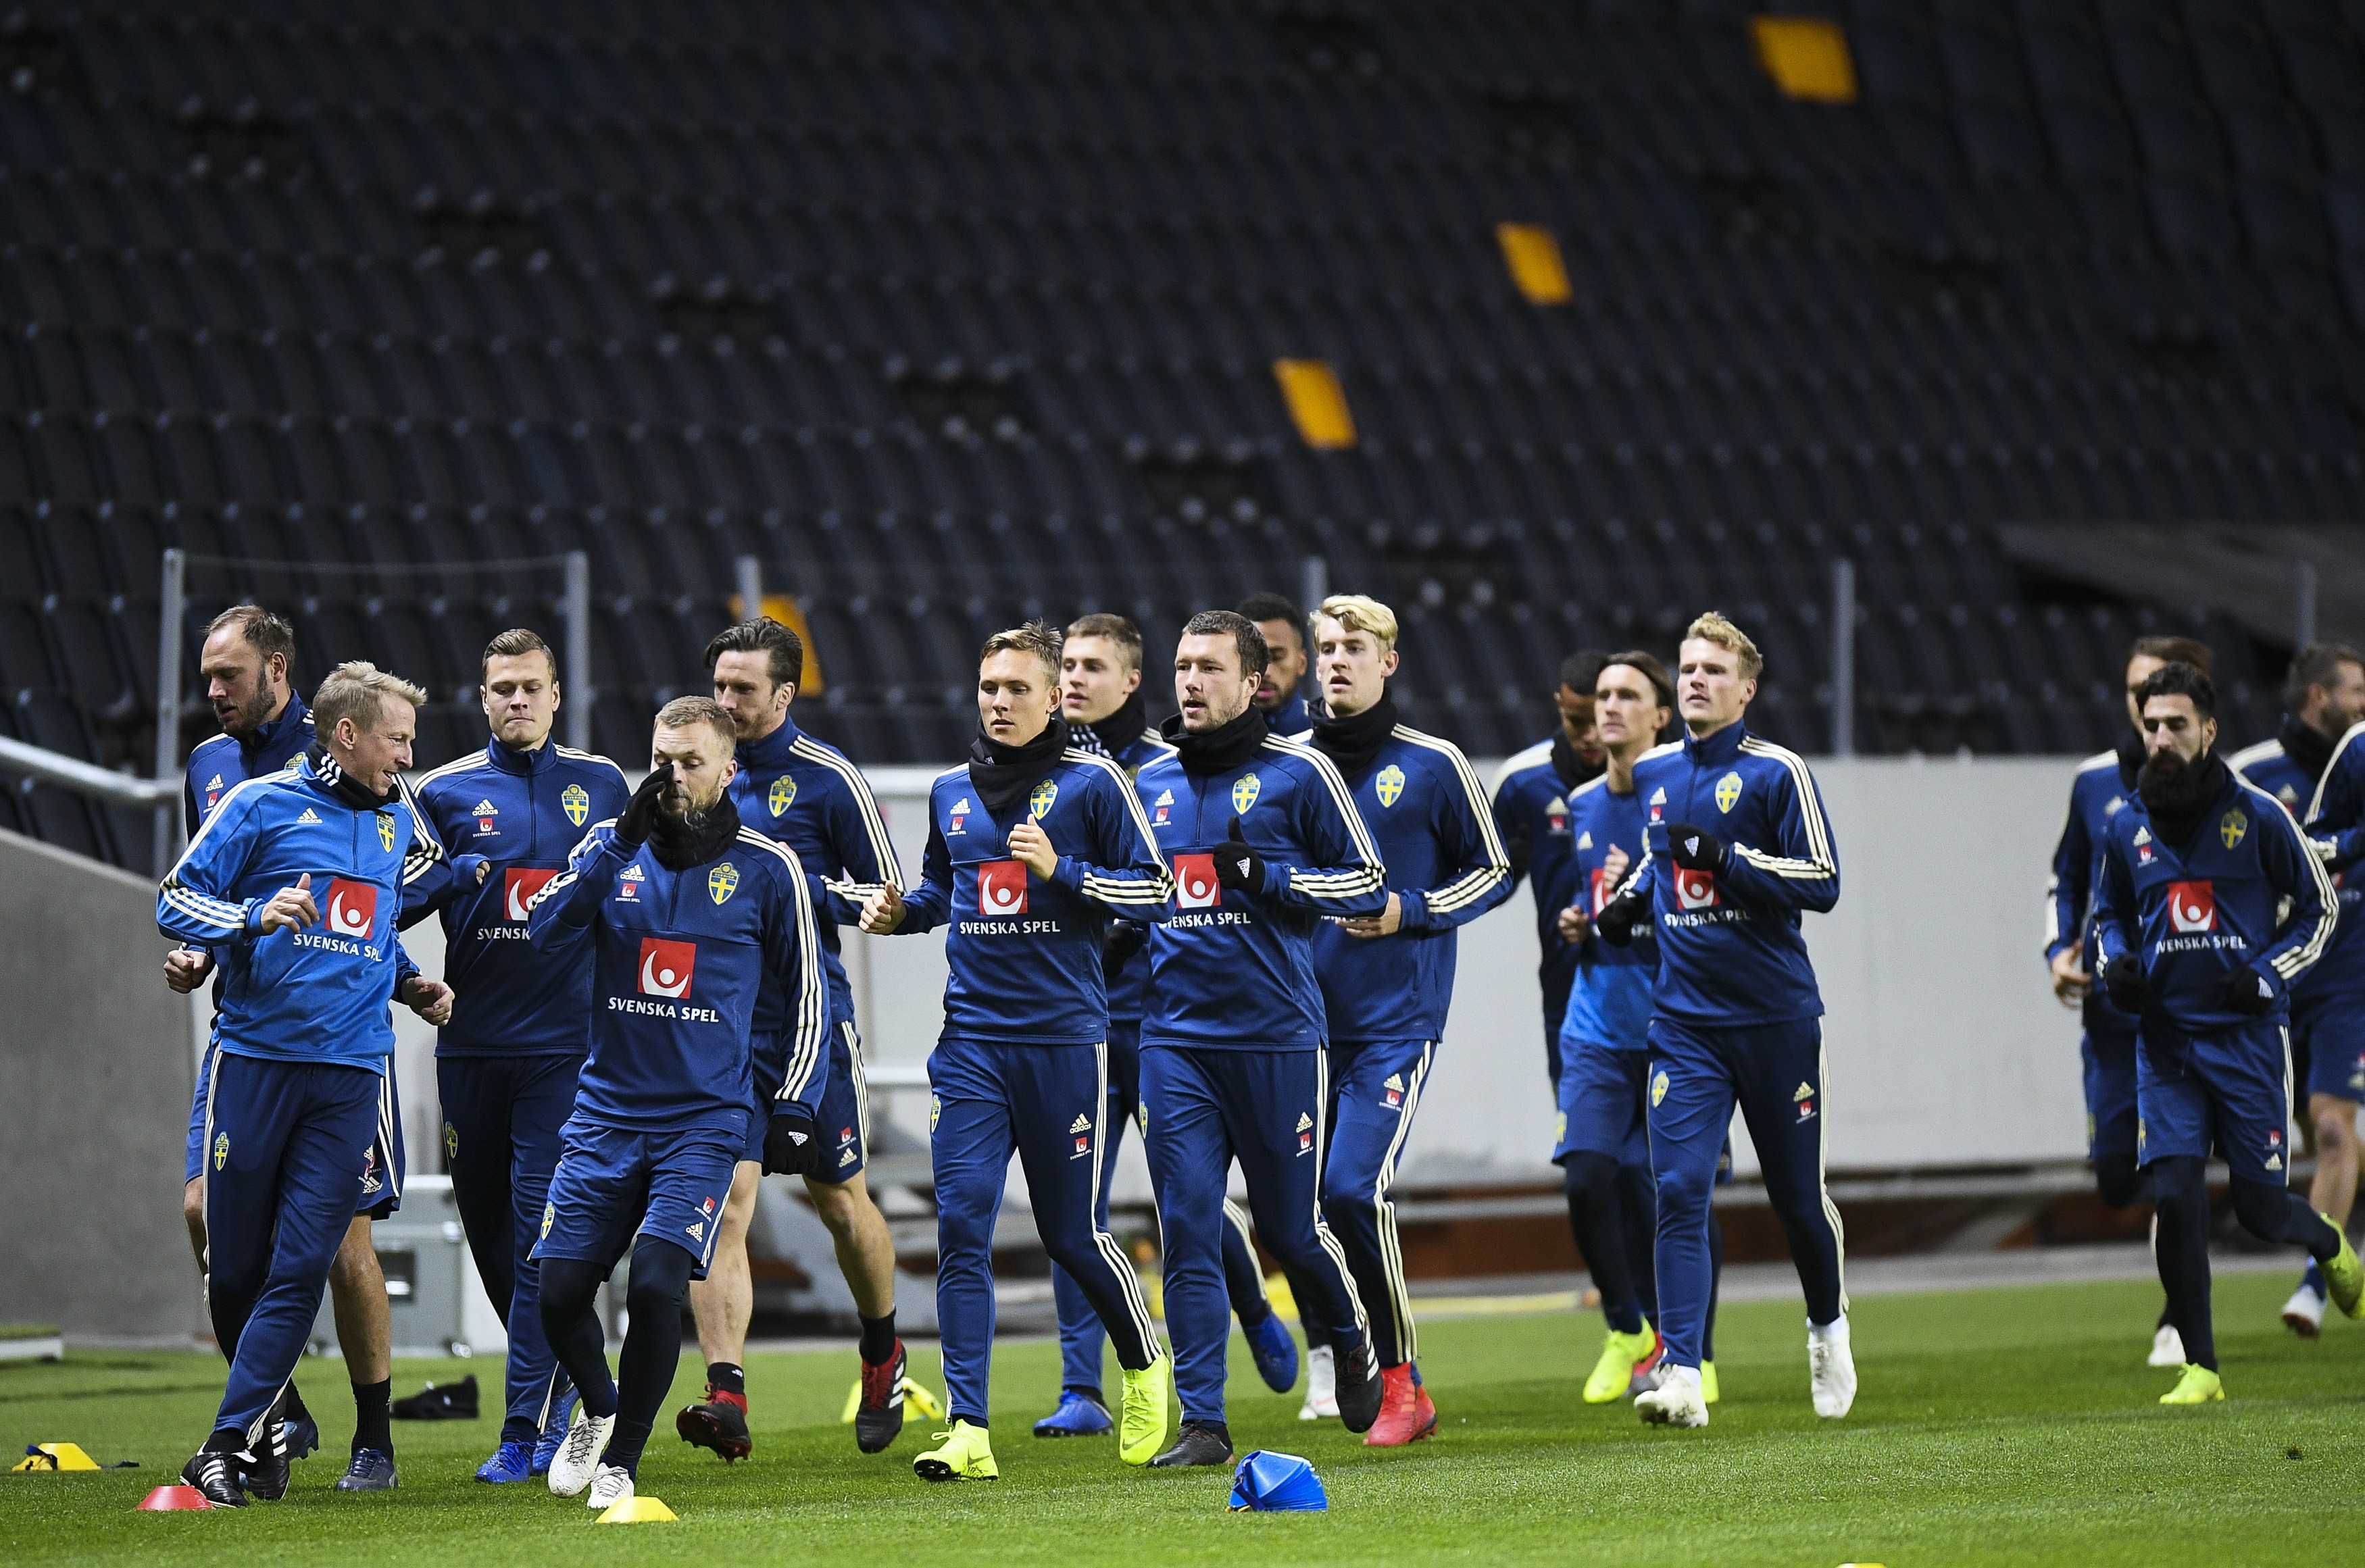 Игроки сборной Швеции на тренировке перед матчем с Россией. Фото: © РИА Новости/Александр Вильф